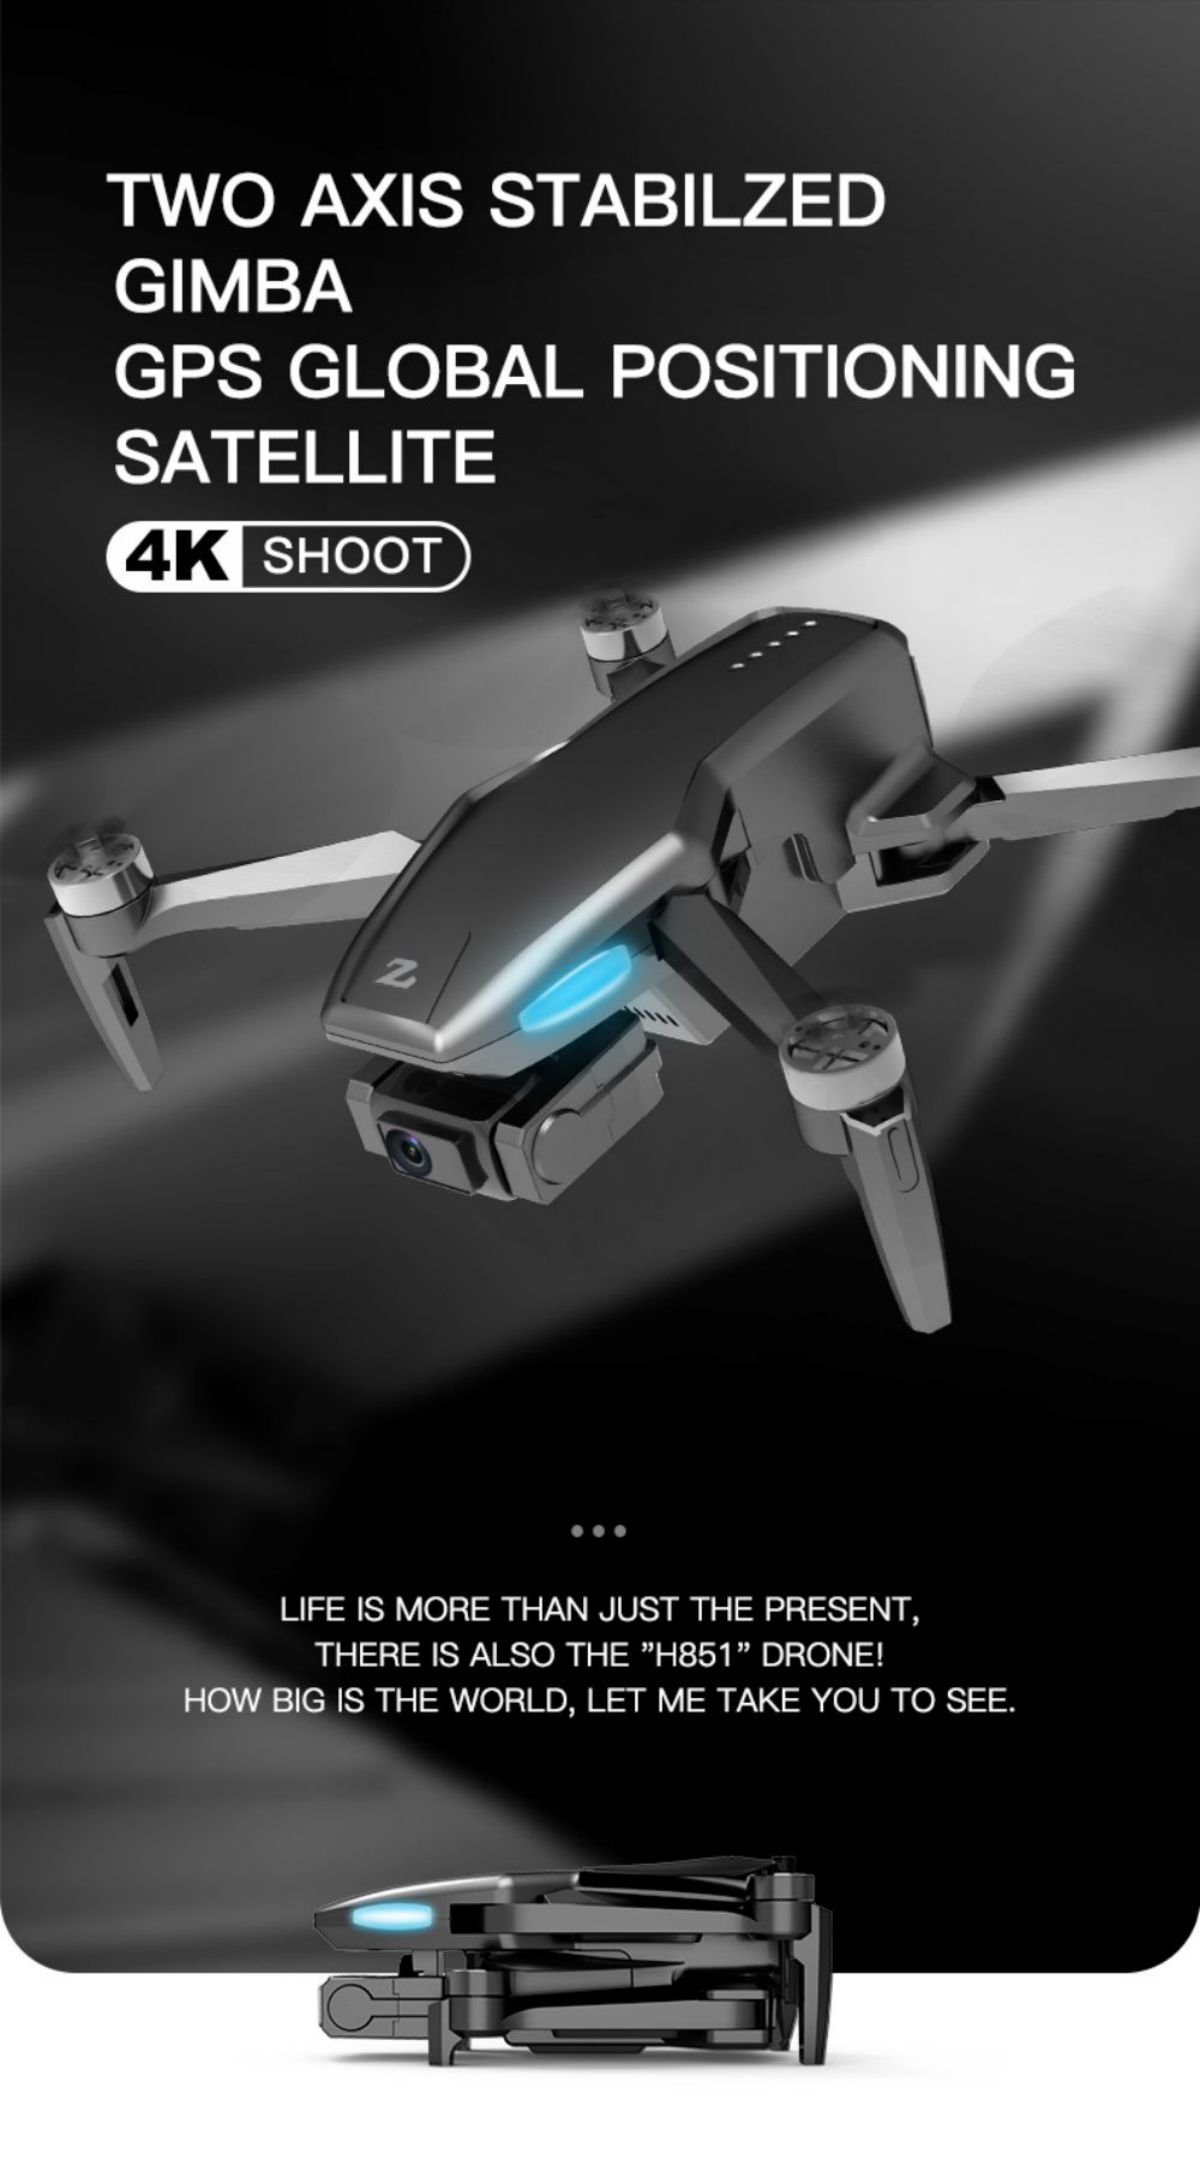 I-Drone Quadcopter (1)